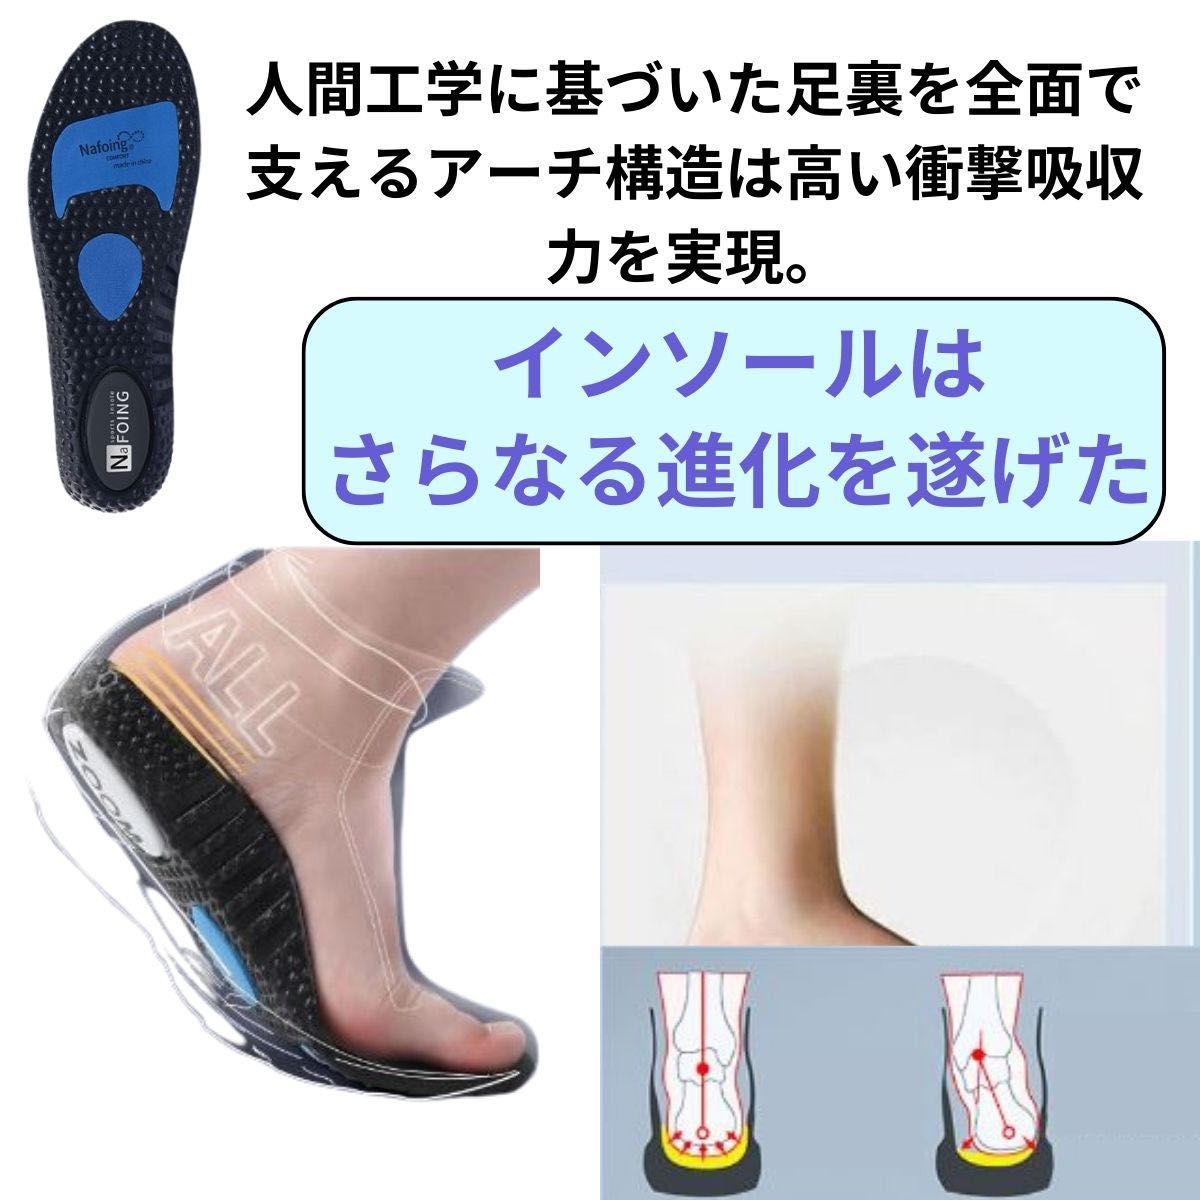 インソール 新型 衝撃吸収 中敷き抗菌 正規品 靴底安定 蒸れない 男女兼用 扁平足 アーチサポート 立ち仕事 ランニング靴